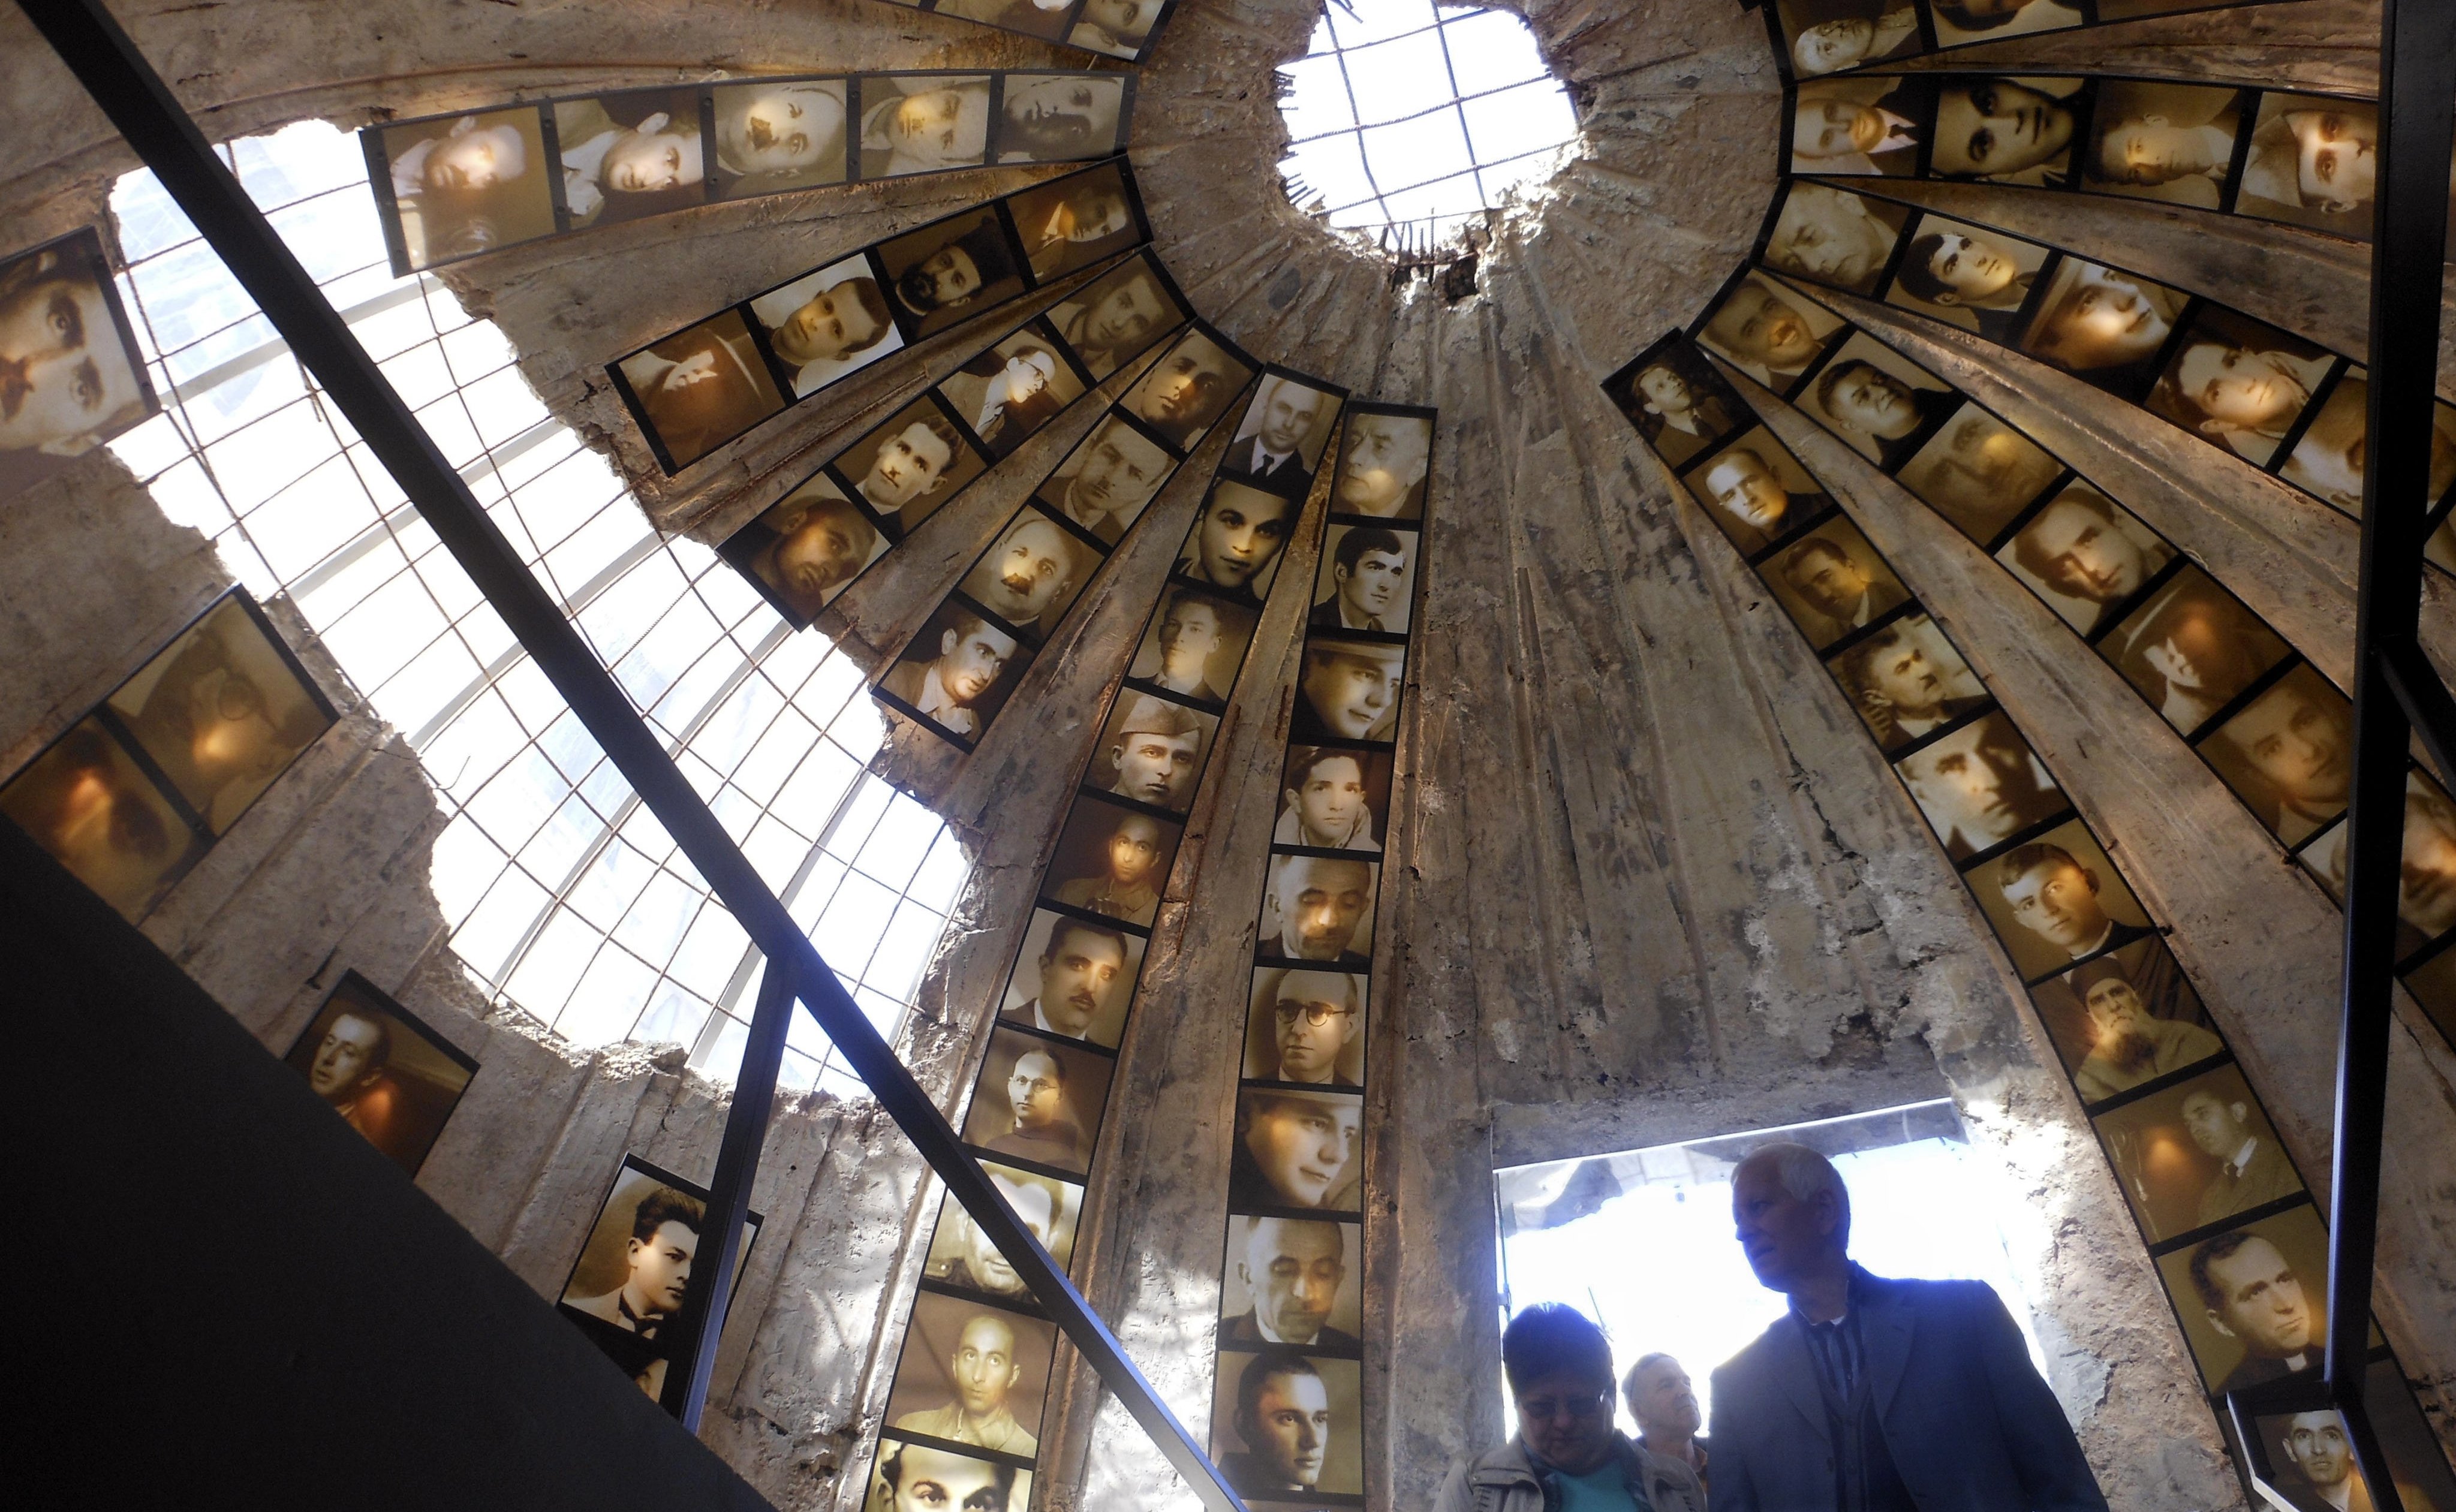 Convierten túnel antinuclear en museo de víctimas del comunismo